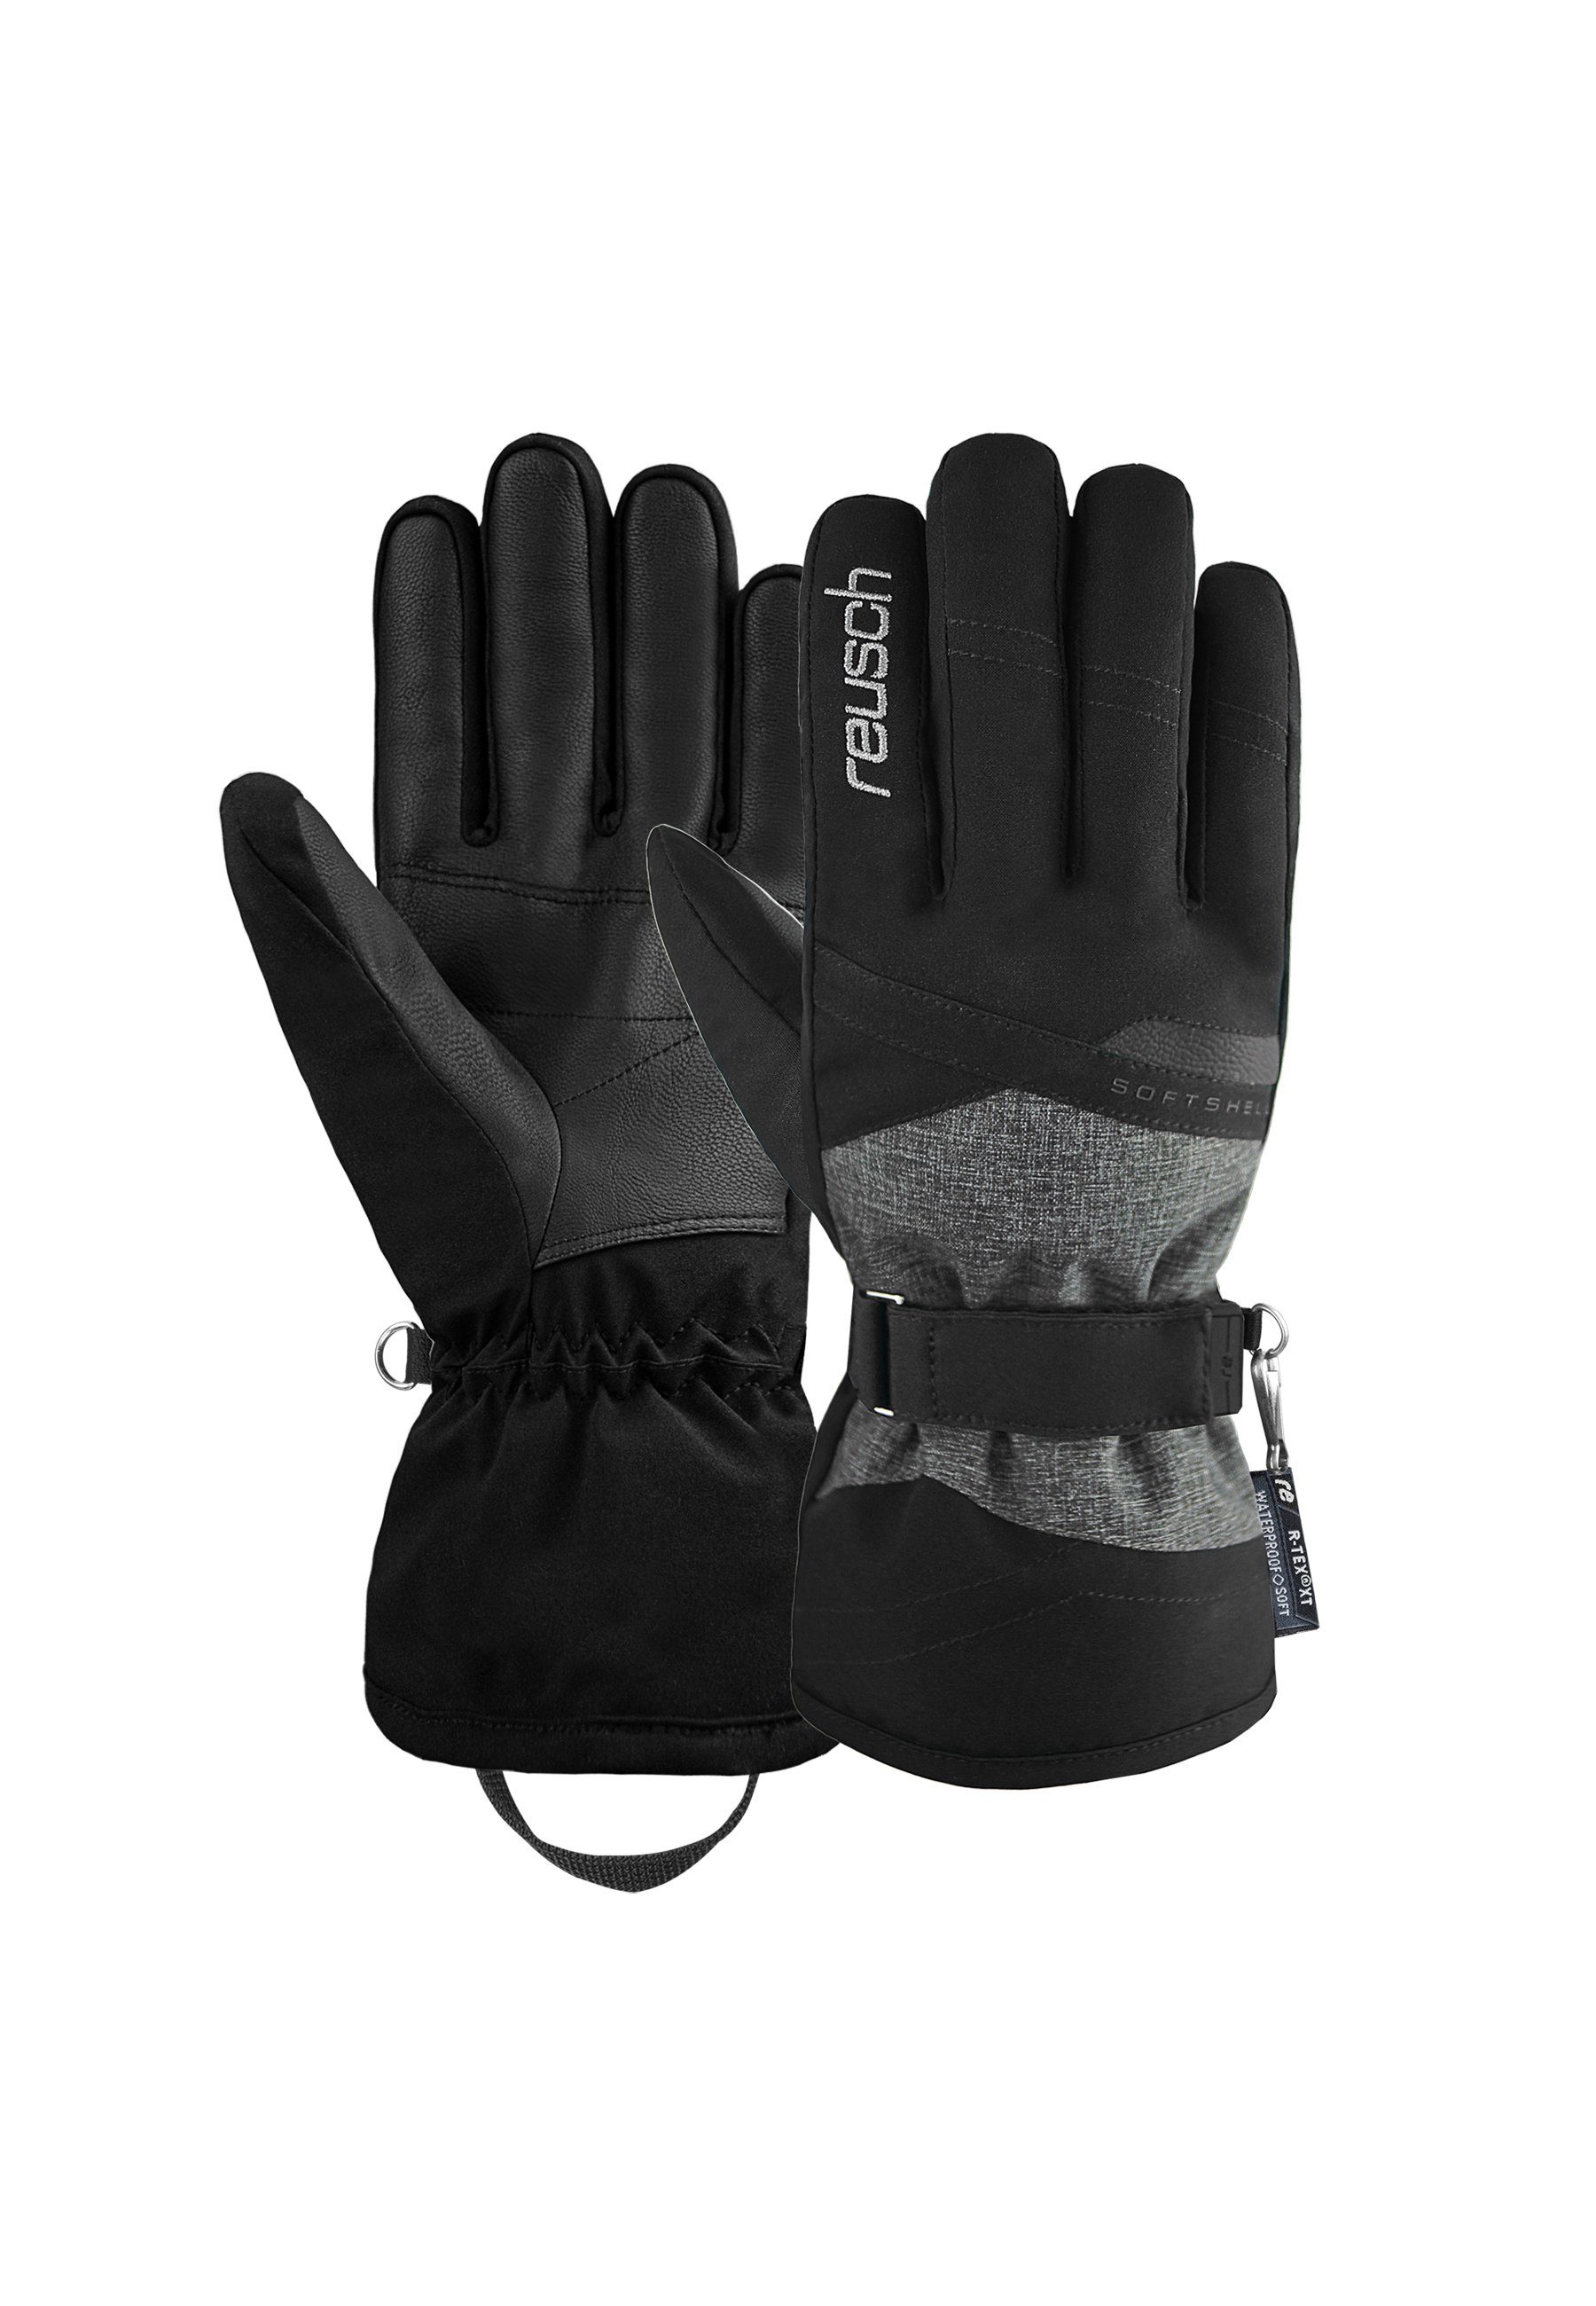 Reusch Skihandschuhe Hellen R-TEX XT mit PRIMALOFT-Isolation schwarz-grau | Handschuhe